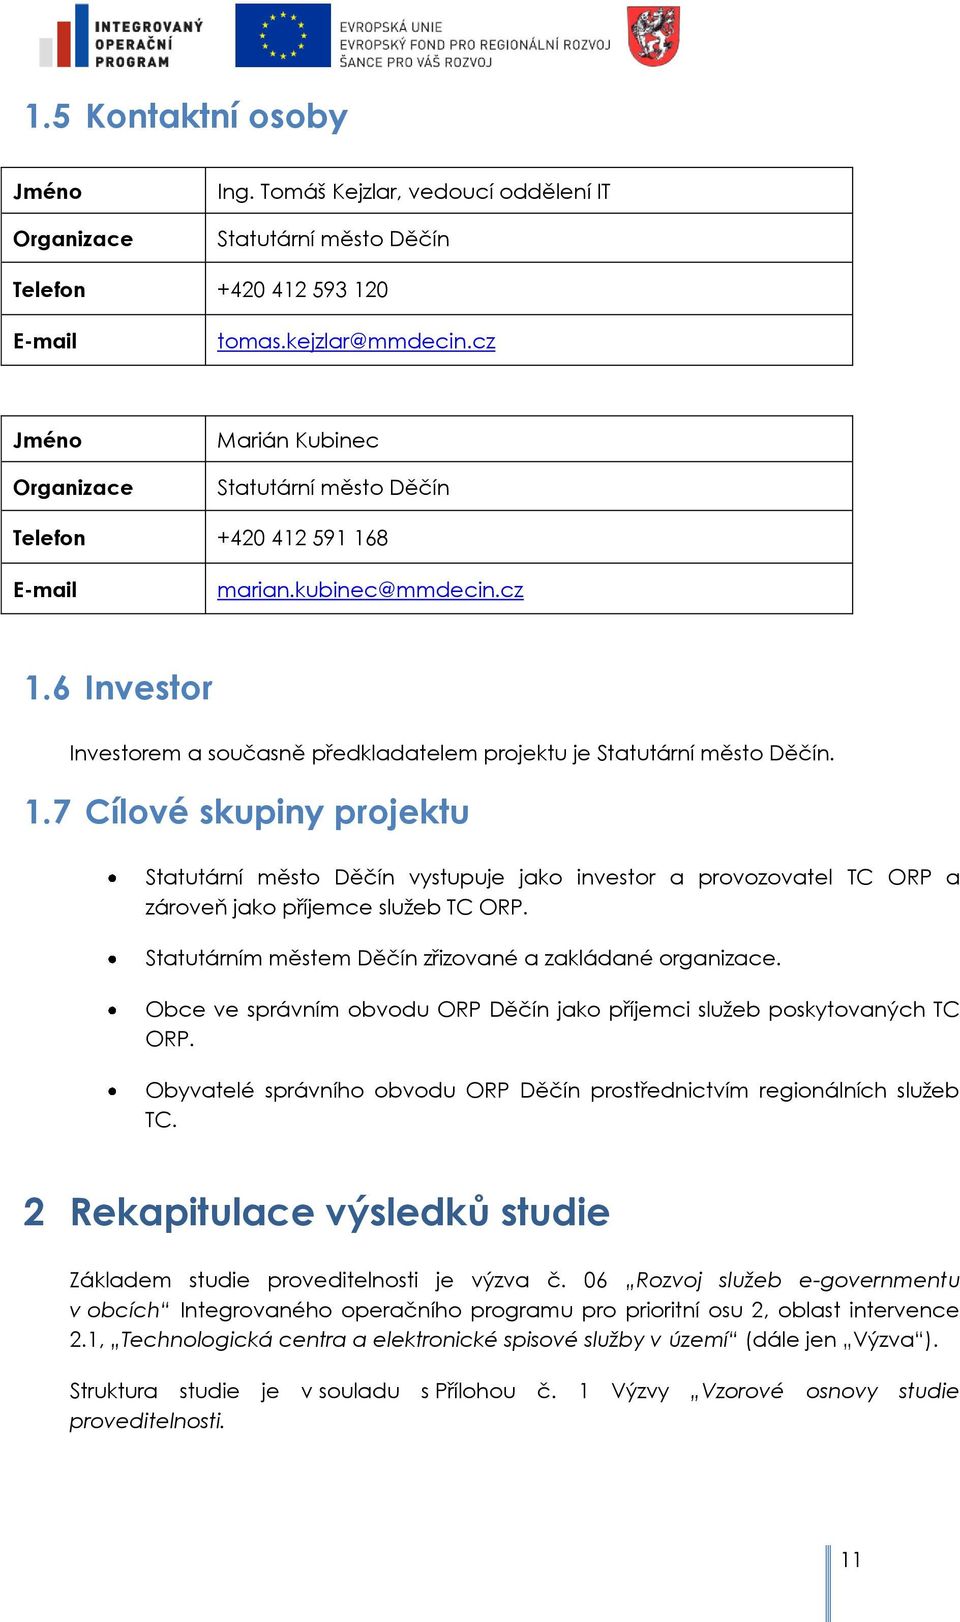 8 E-mail marian.kubinec@mmdecin.cz 1.6 Investr Investrem a sučasně předkladatelem prjektu je Statutární měst Děčín. 1.7 Cílvé skupiny prjektu Statutární měst Děčín vystupuje jak investr a prvzvatel TC ORP a zárveň jak příjemce sluţeb TC ORP.